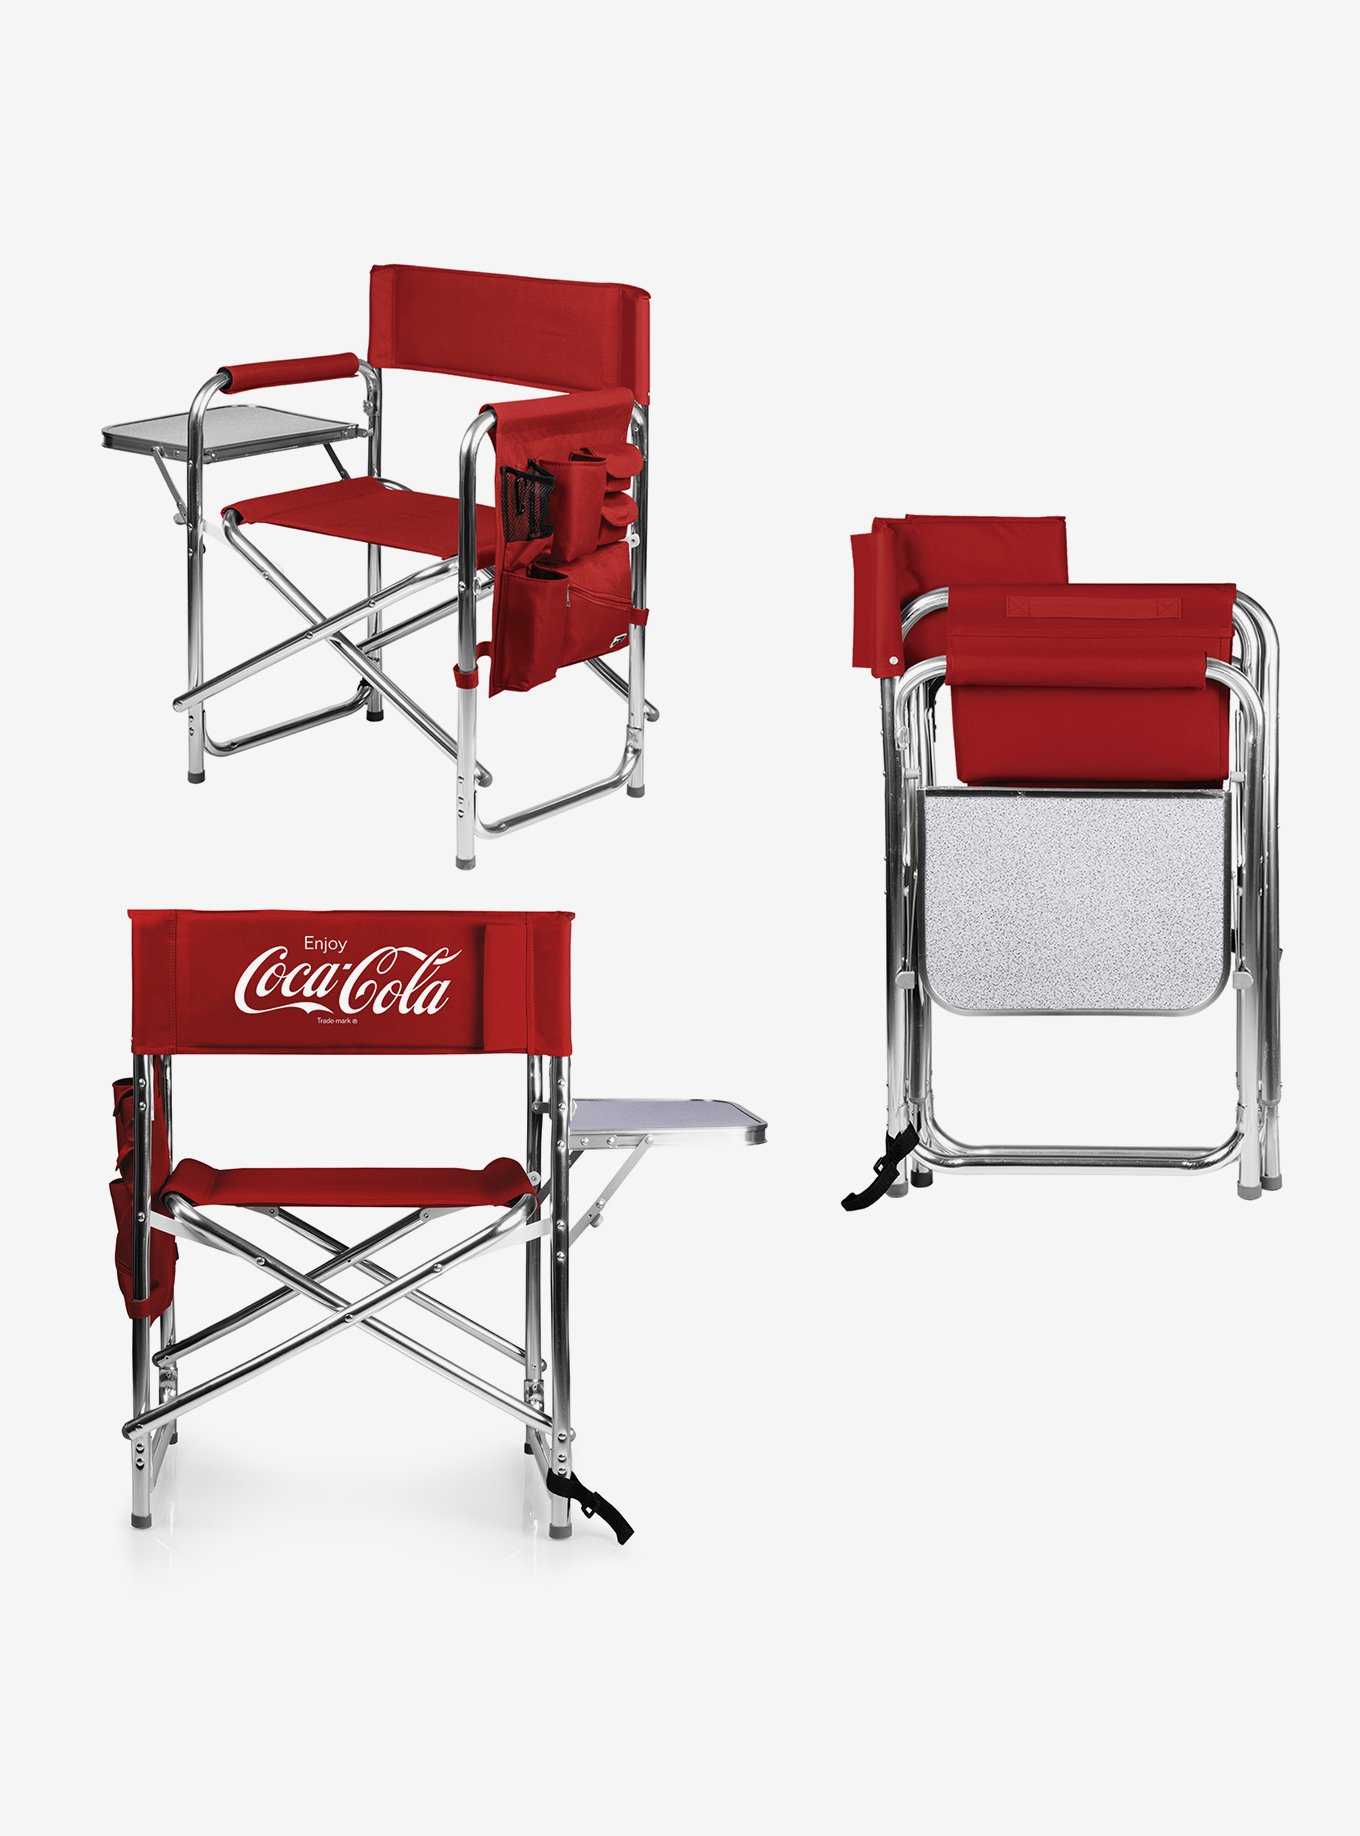 Coca-Cola Enjoy Folding Chair, , hi-res